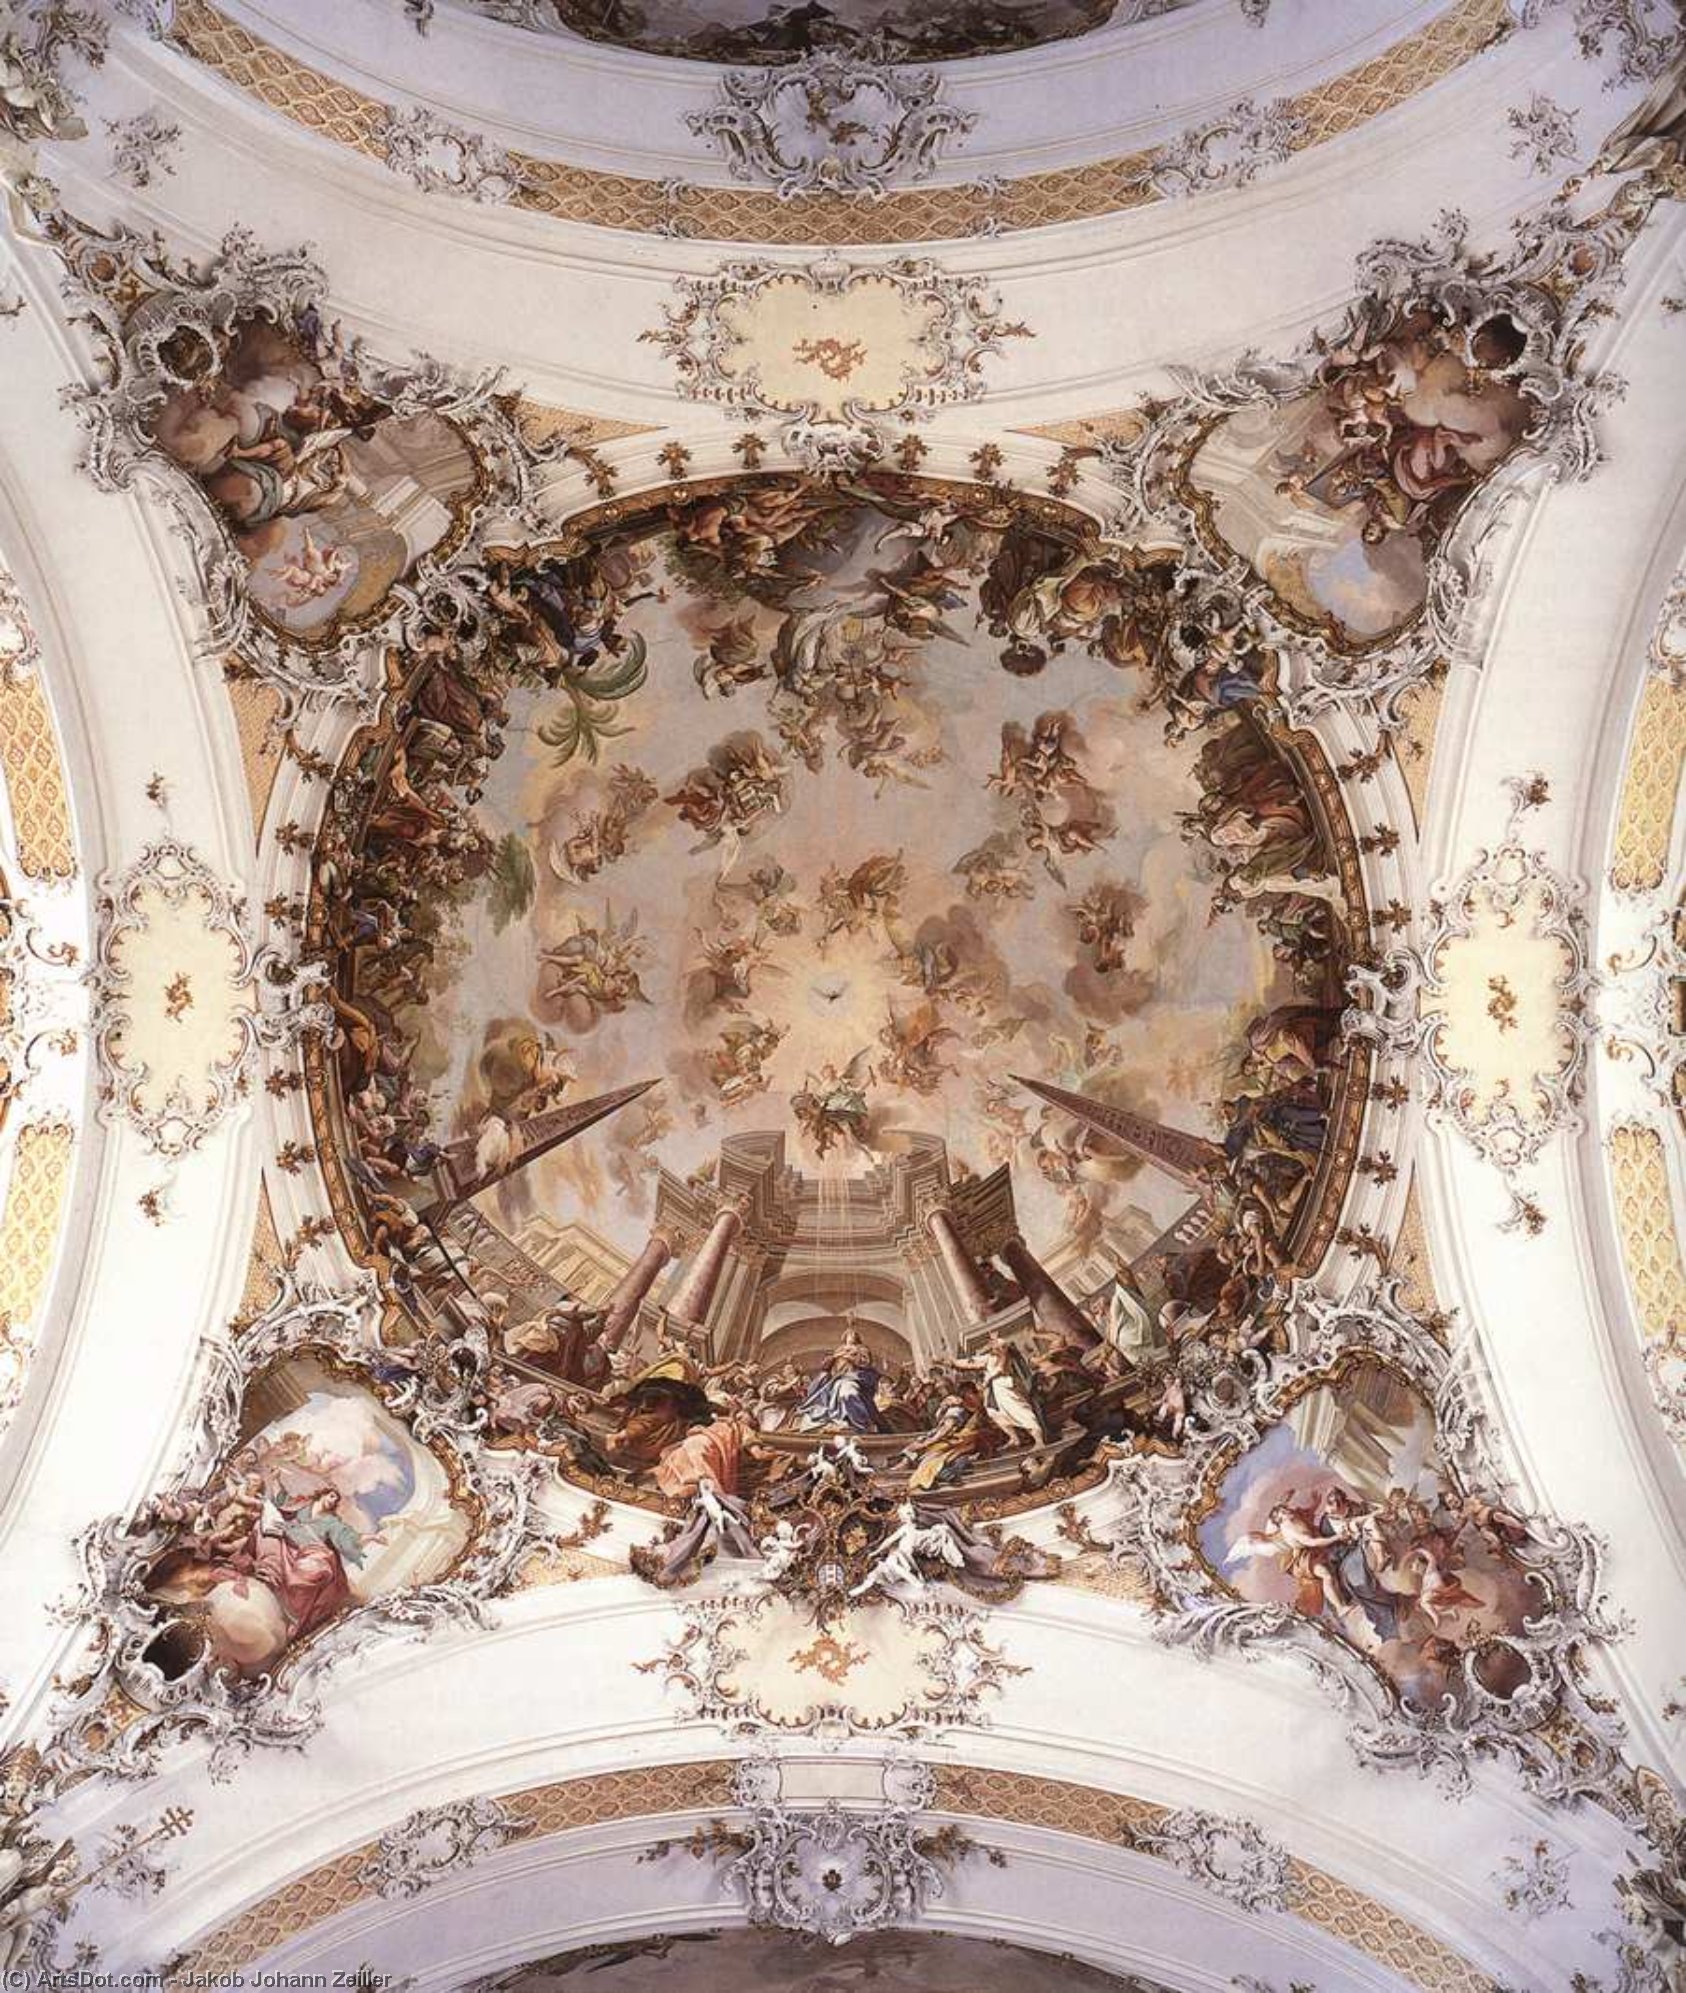 WikiOO.org - אנציקלופדיה לאמנויות יפות - ציור, יצירות אמנות Jakob Johann Zeiller - Ceiling fresco